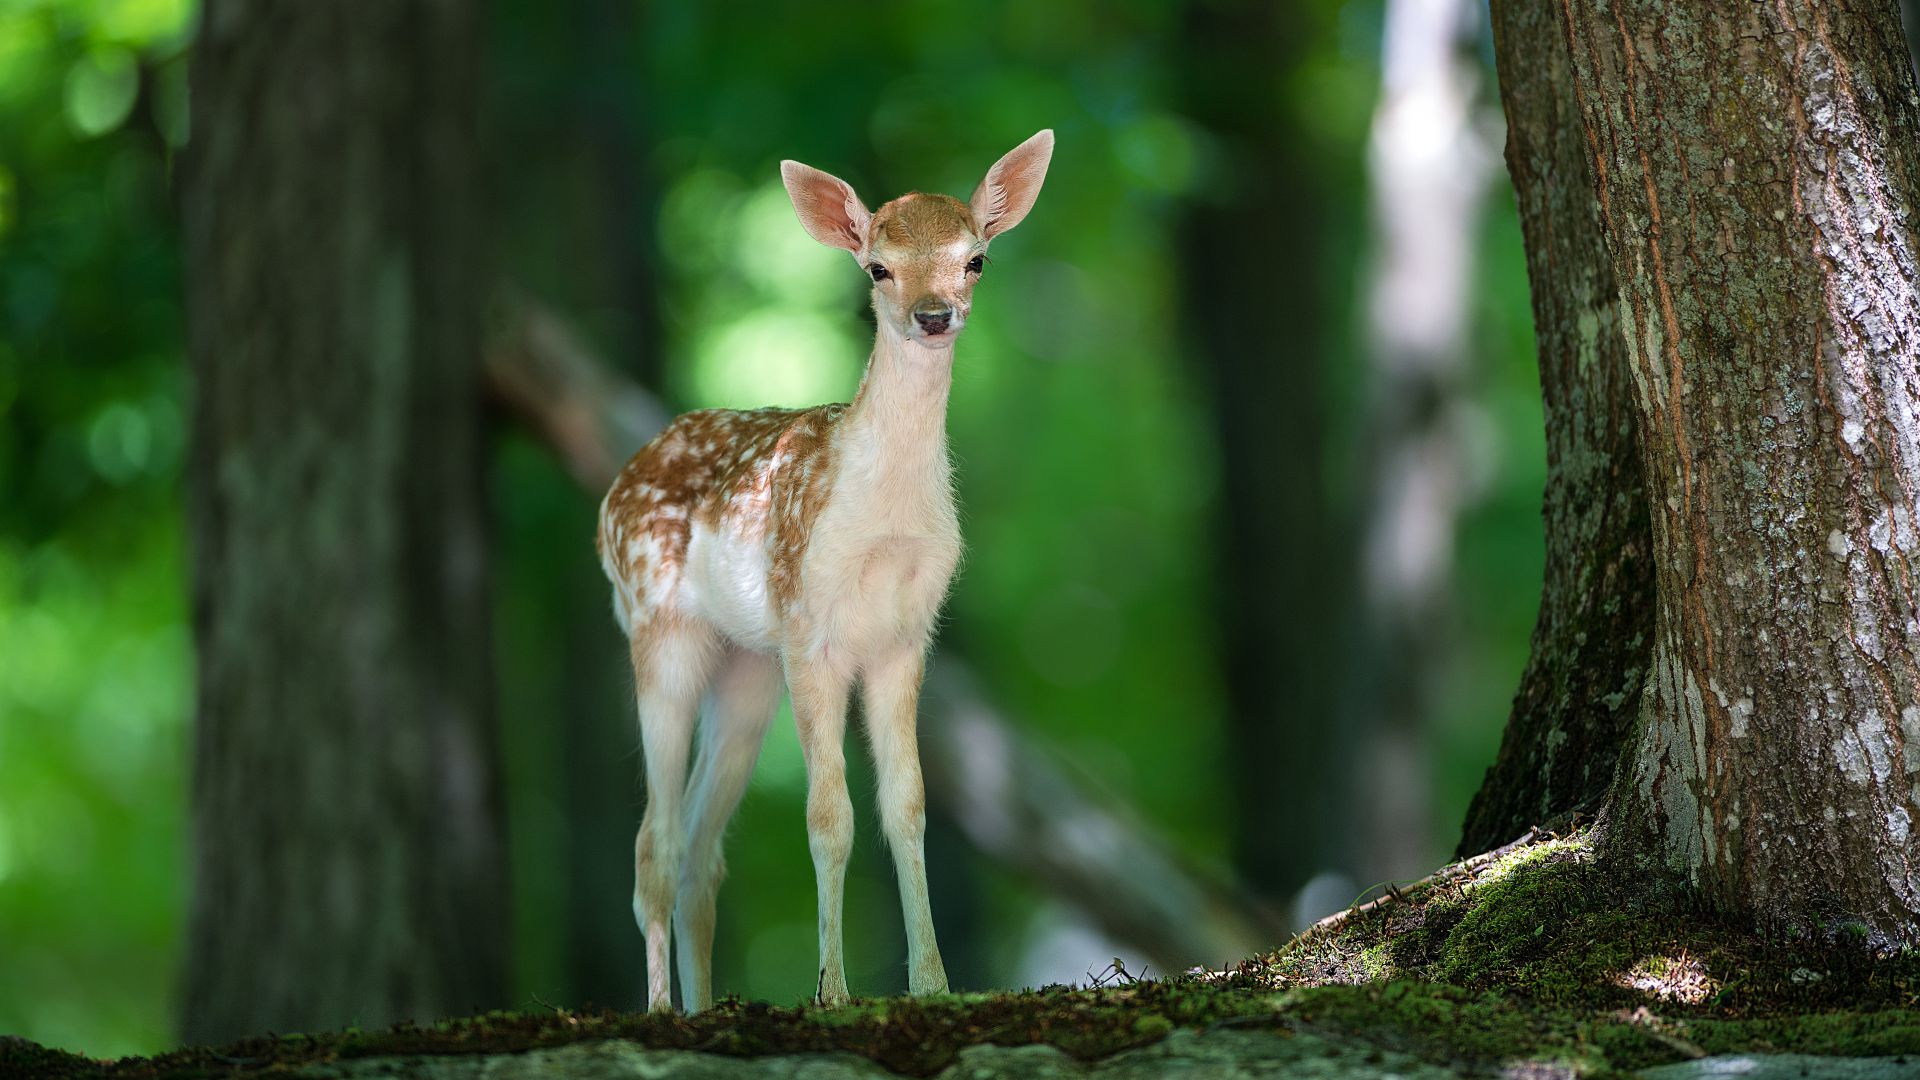 Deer, cute animals, forest (horizontal)